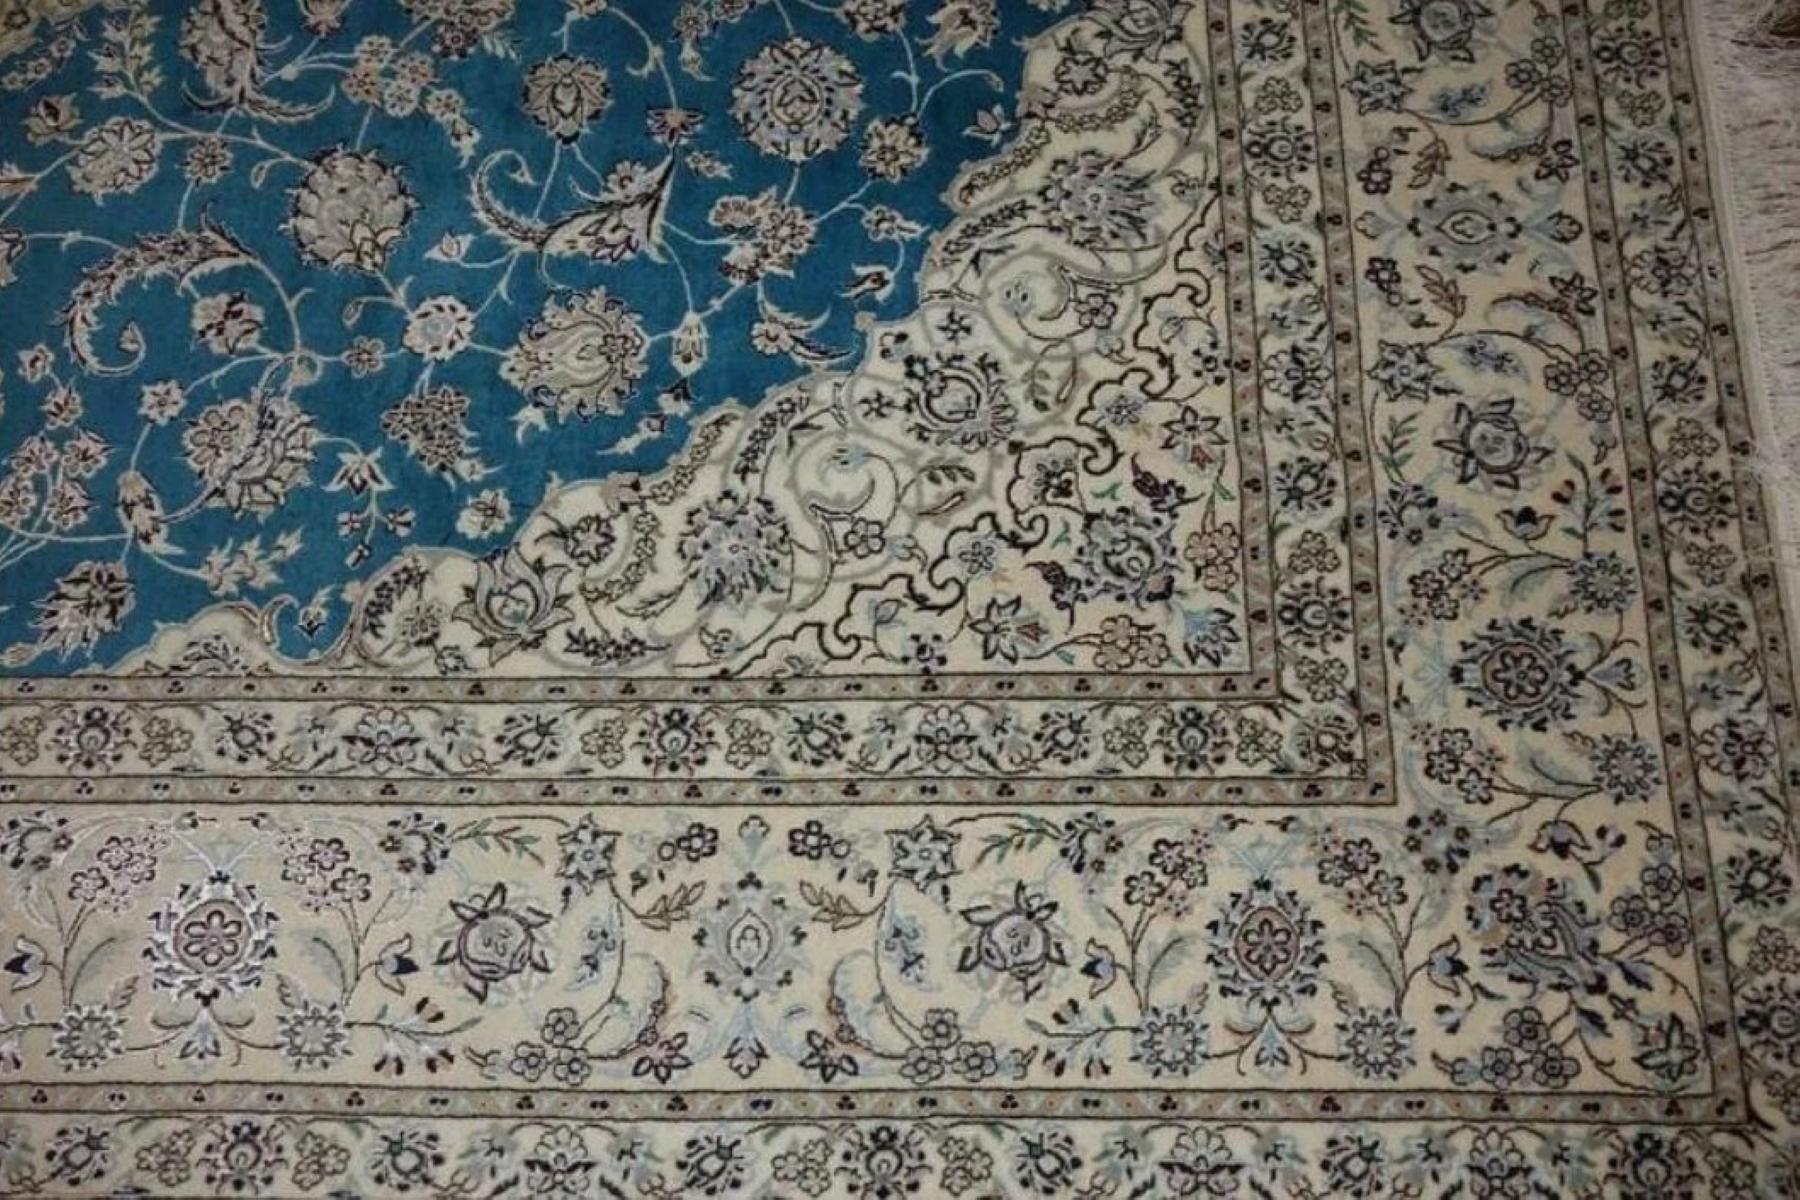 Sehr feine persische Teppich Nain 500 Knoten pro Zoll, Größe 10,5 x 7,2 Iran Nain Habbibian Wolle und Seide. Rund 5,000,000 Knoten, einer nach dem anderen von Hand geknüpft. Es dauert 3 Jahre, um dieses Kunstwerk zu vollenden.